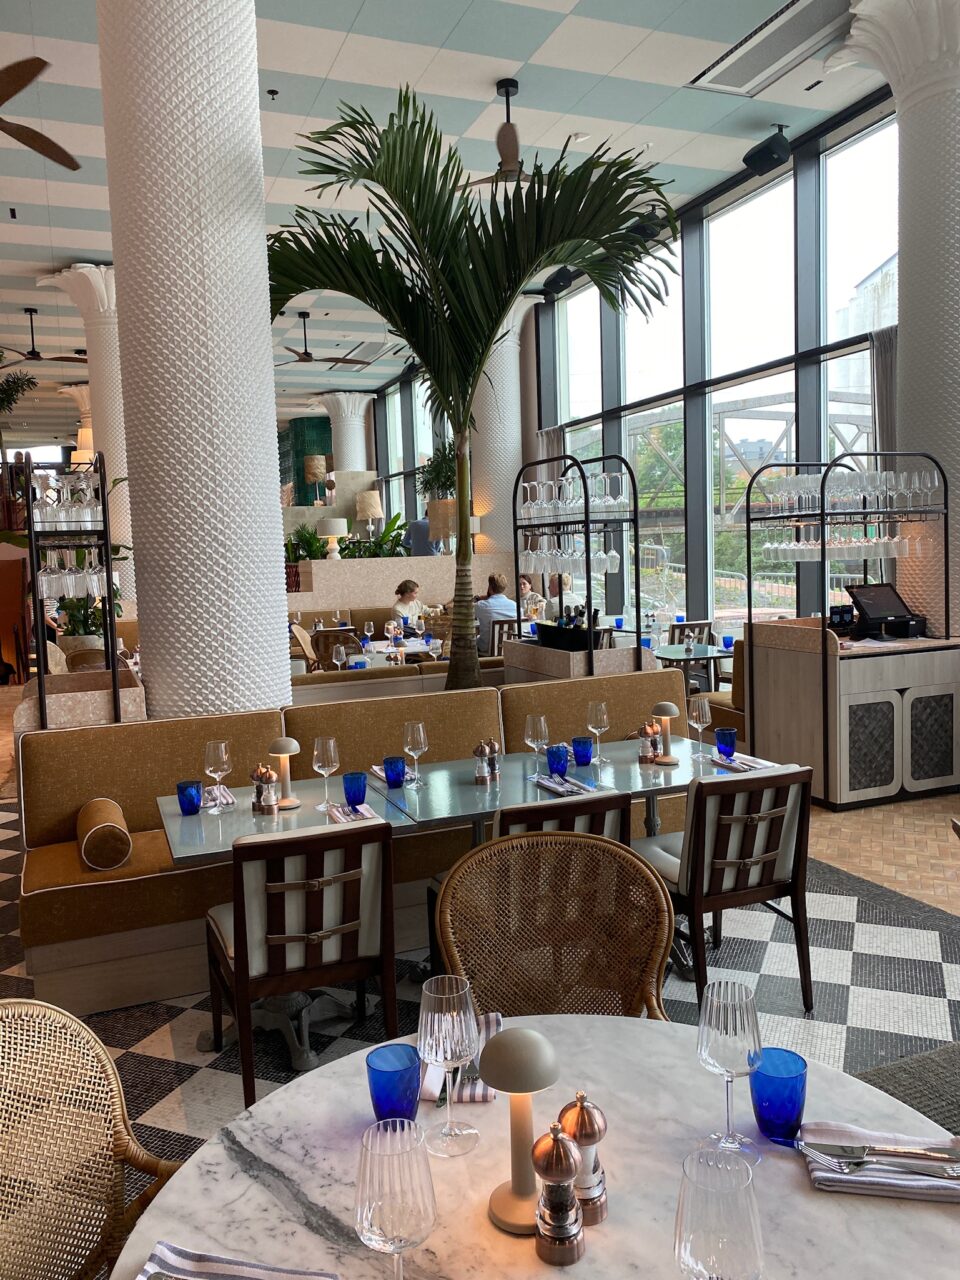 Et hyggelig spiseområde med hvite gipssøyler, palmer og pent dekkede bord. Foto